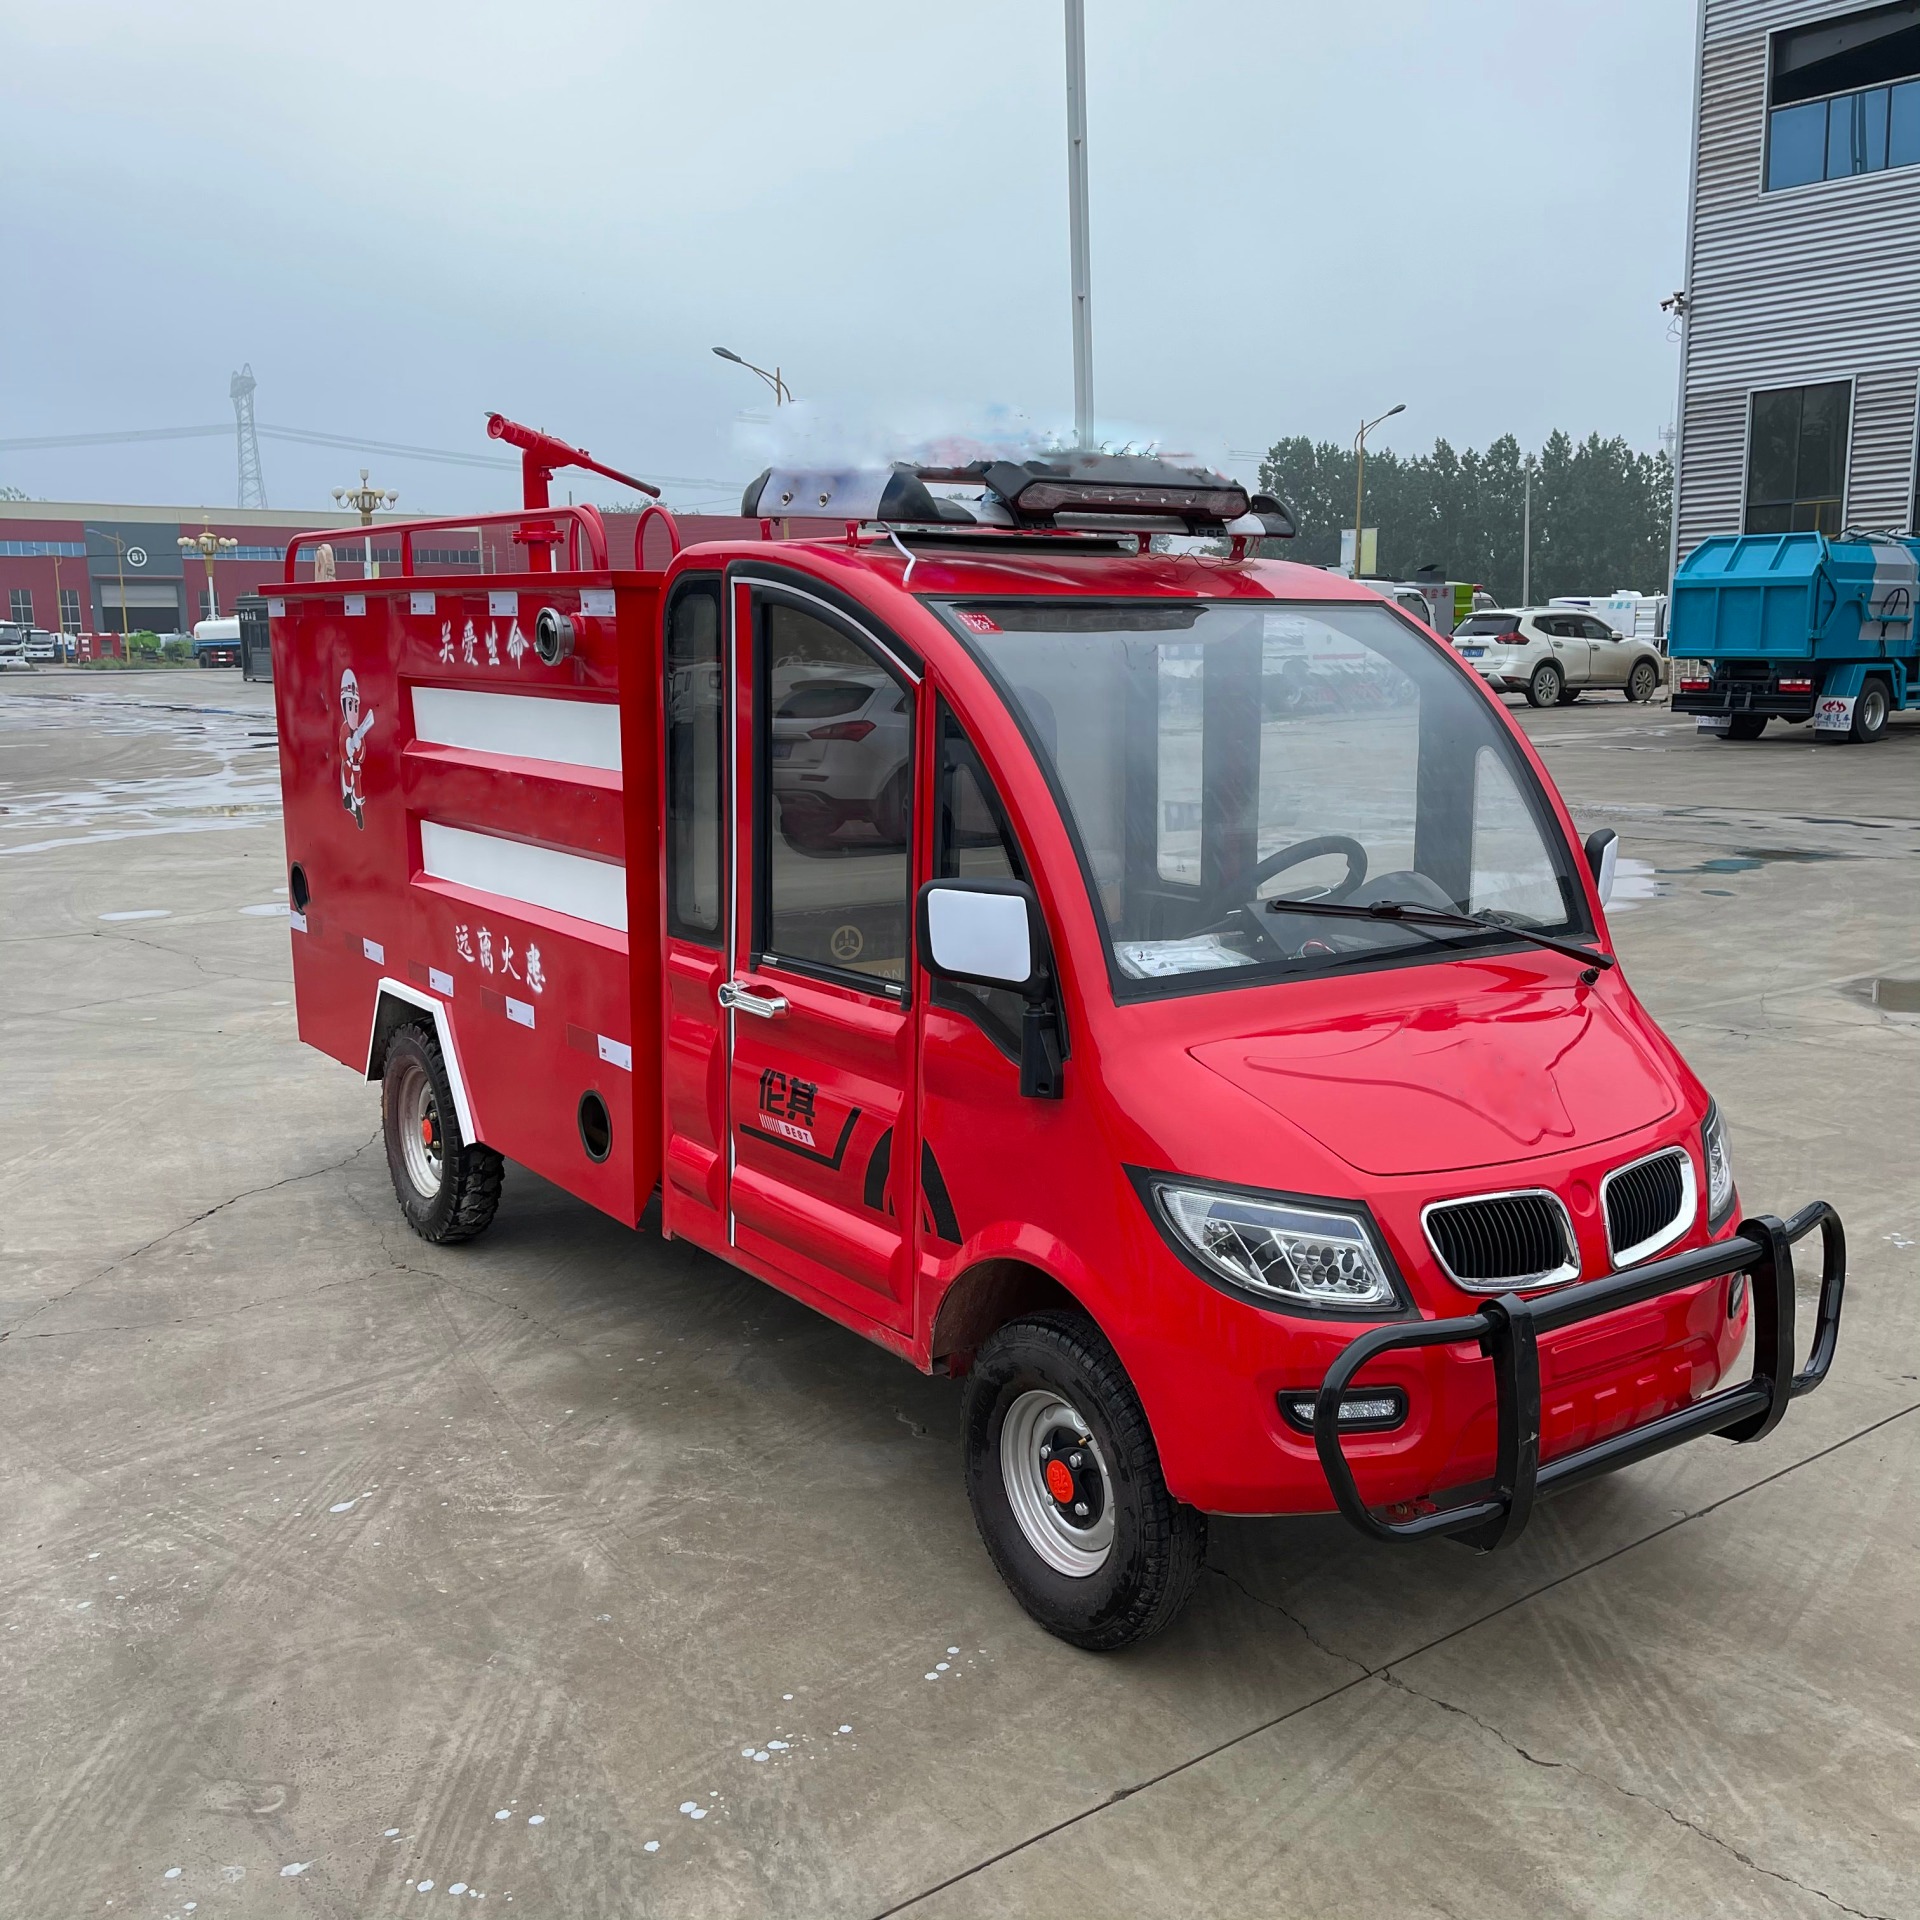 中运威 小型消防车厂家  高炮射程可达35米 11马力汽油机消防泵 景区社区使用